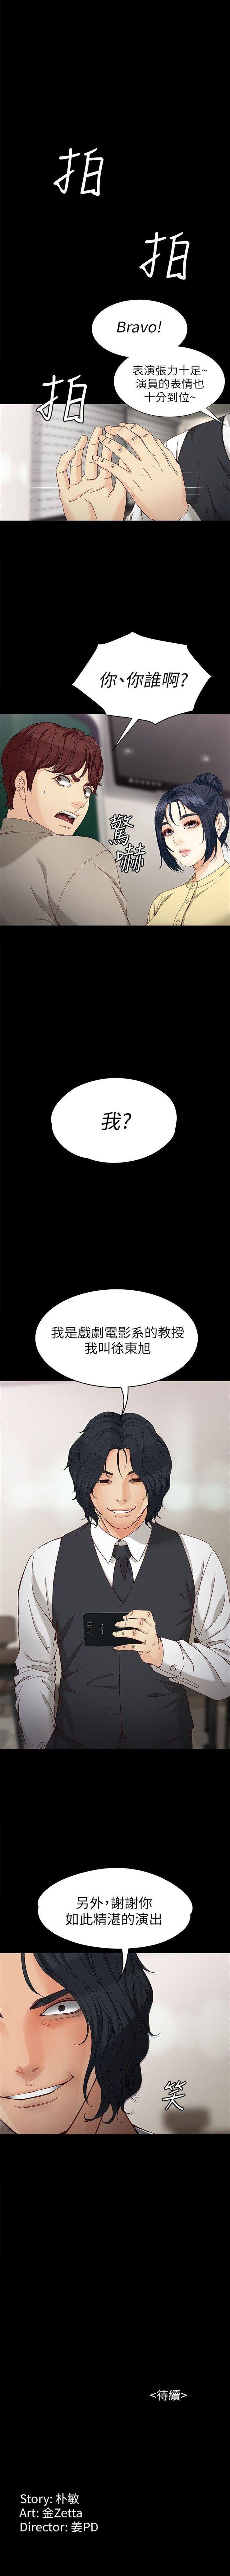 女大生世晶:无法自拔 1-56 中文翻译 （完结） 201